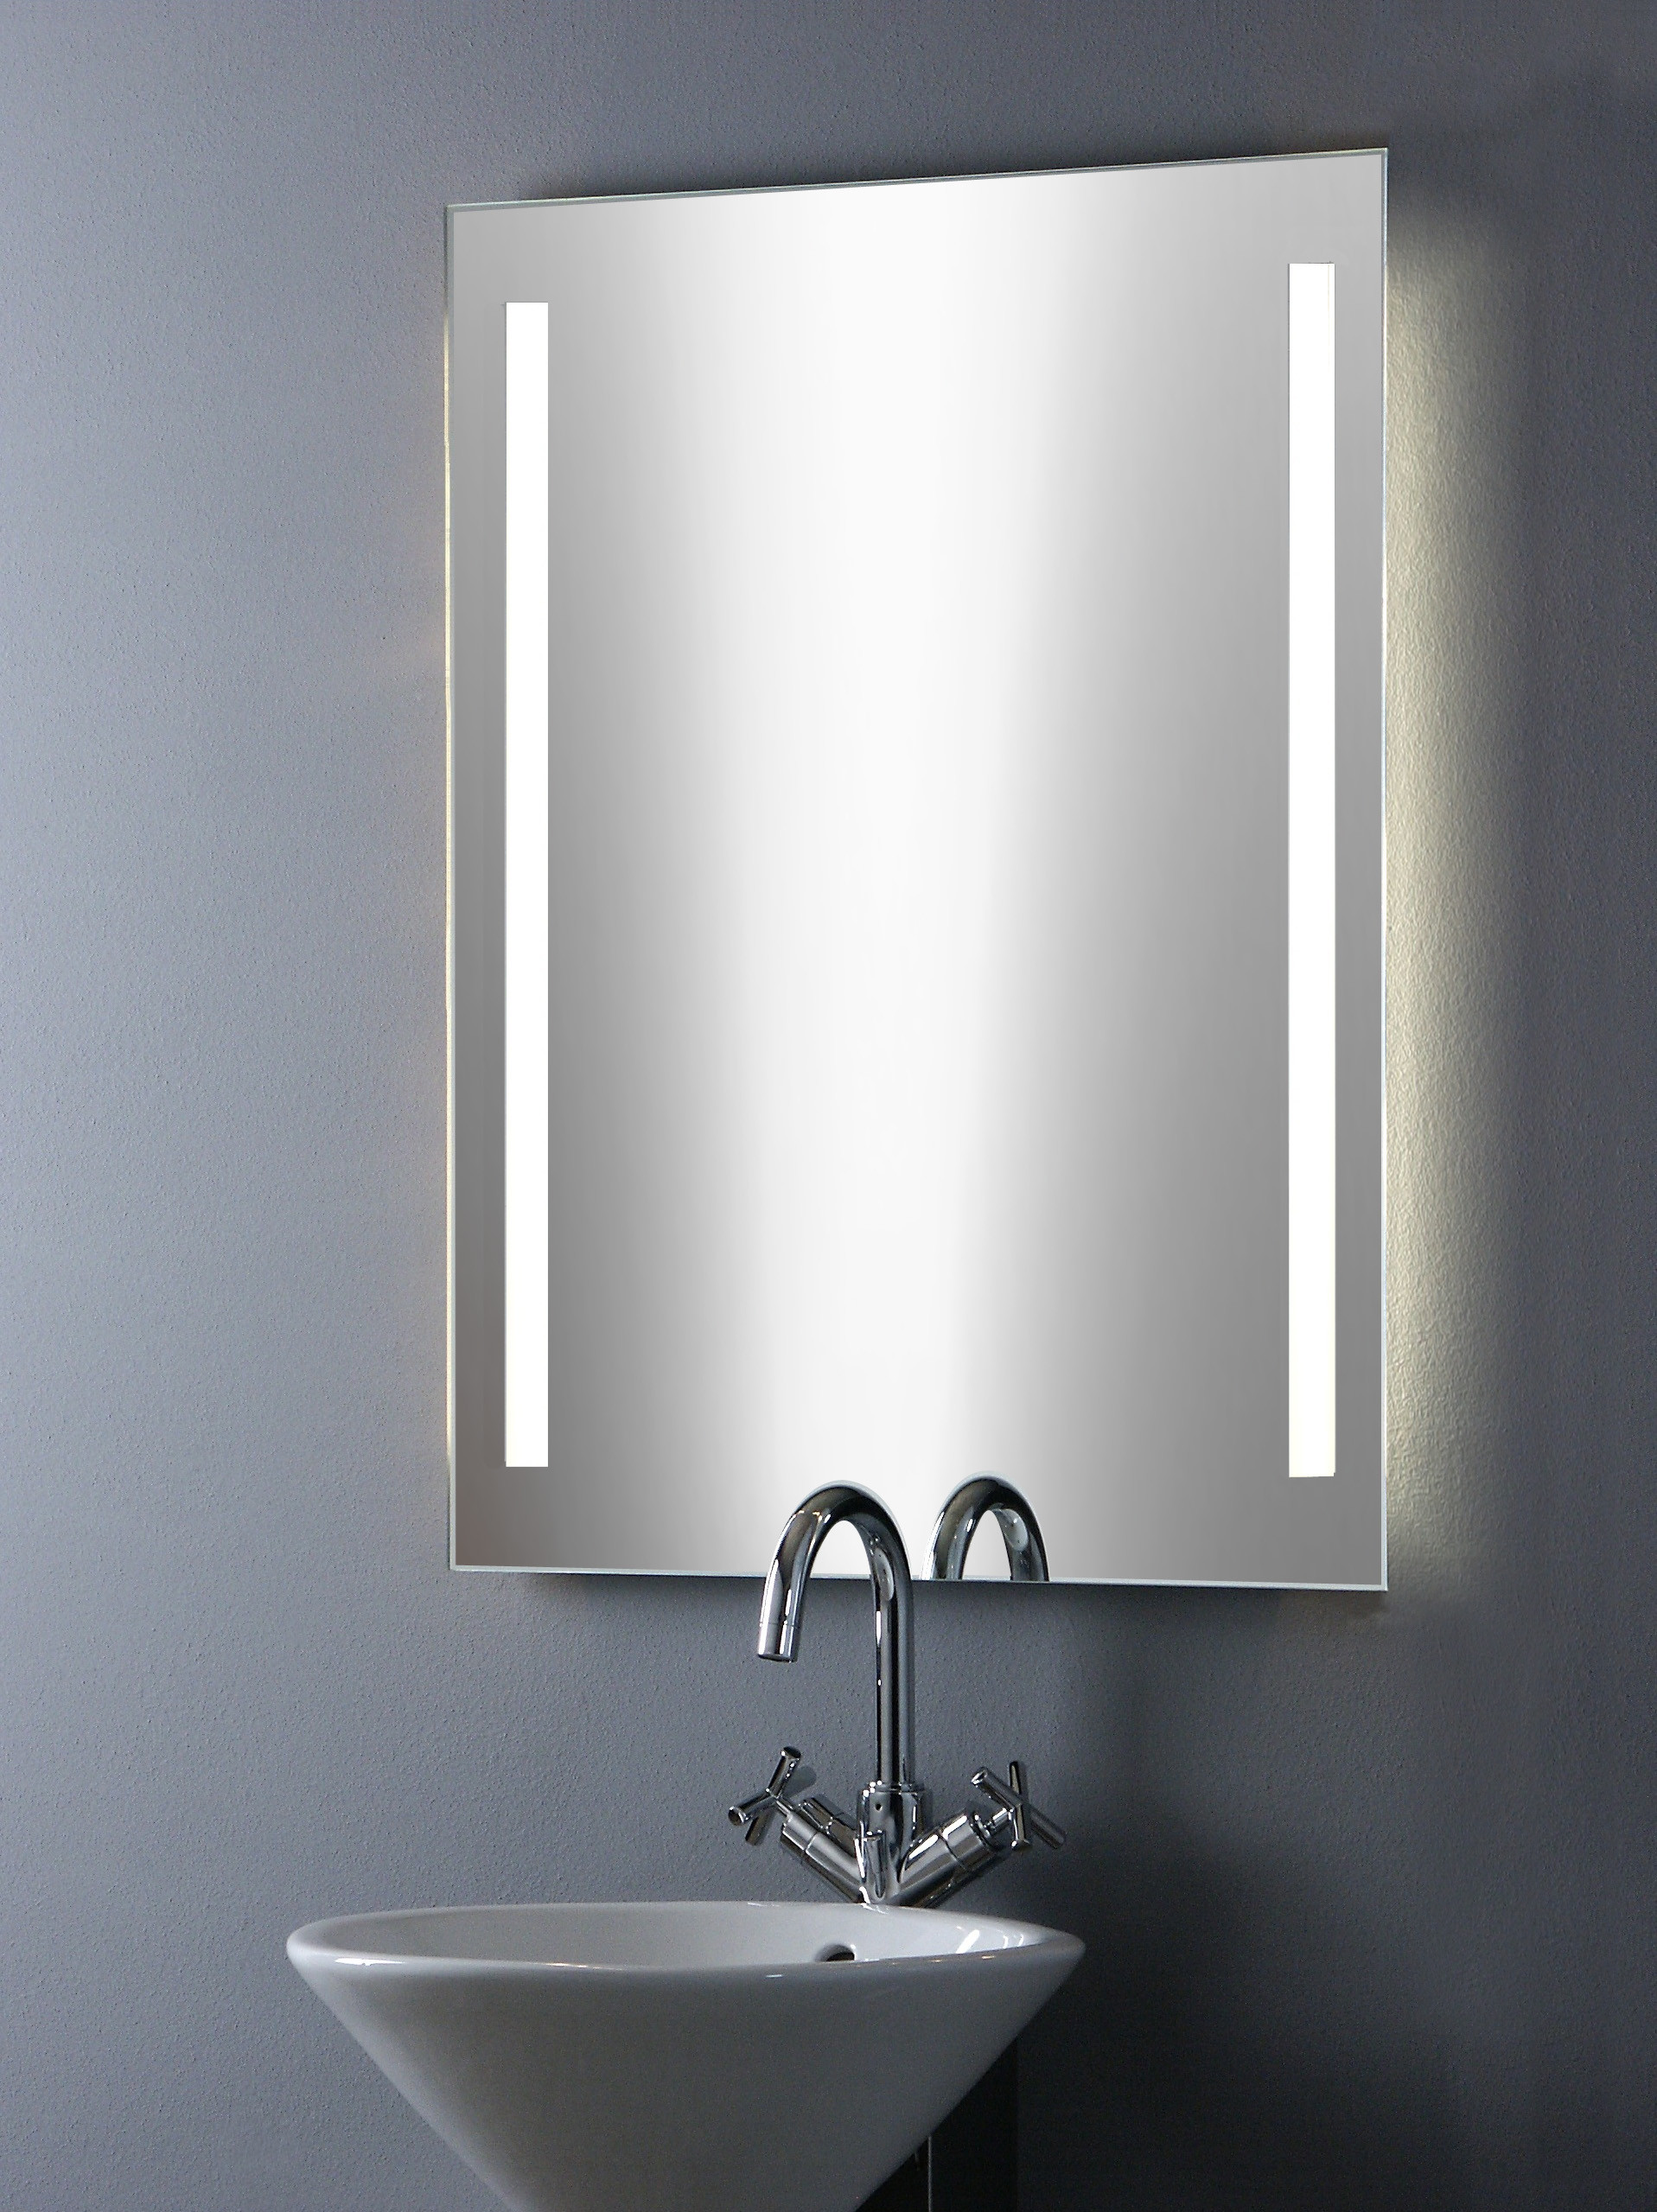 Badezimmerspiegel Mit Beleuchtung
 Badezimmerspiegel mit Beleuchtung